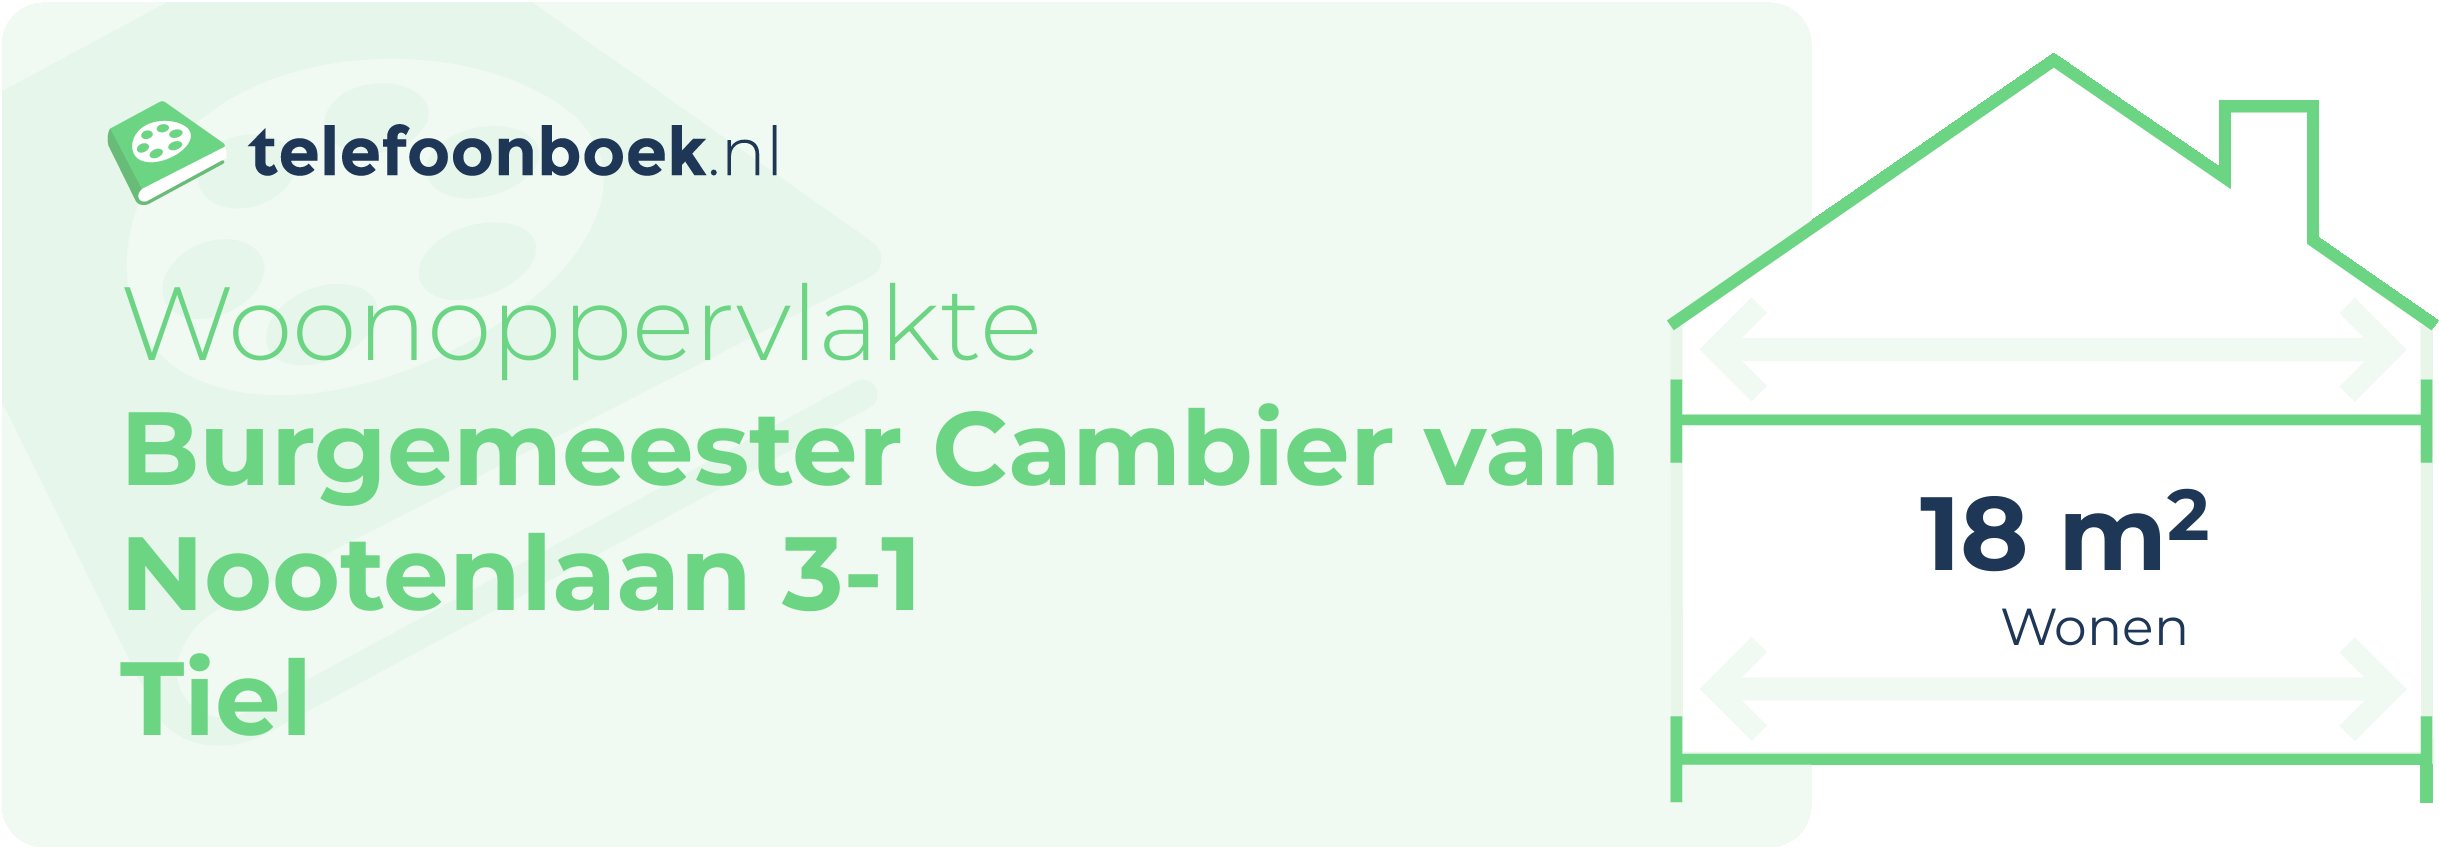 Woonoppervlakte Burgemeester Cambier Van Nootenlaan 3-1 Tiel